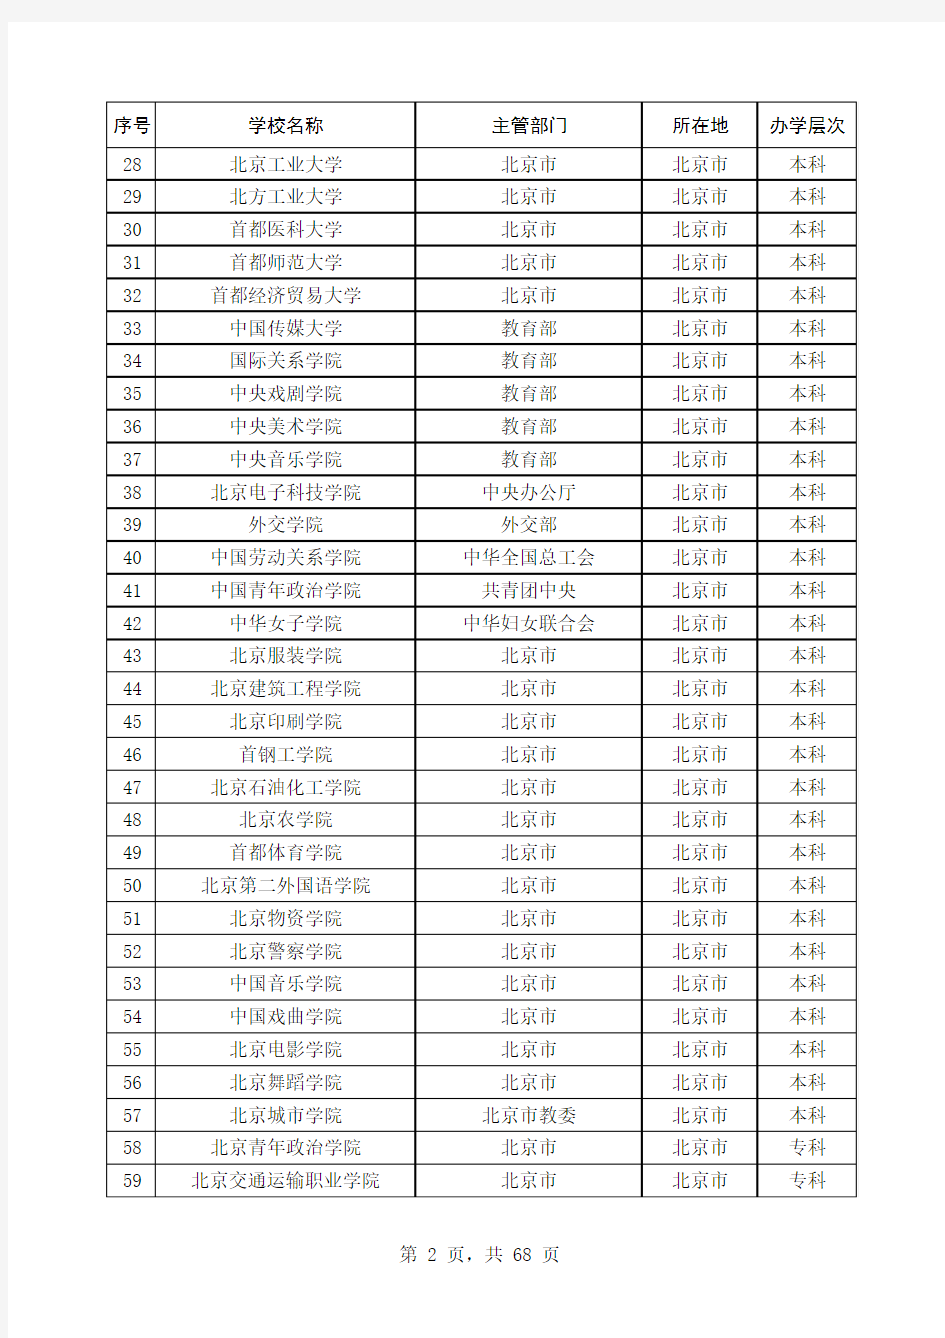 全国普通高校名单(含重点、本专科院校)截止2012年4月